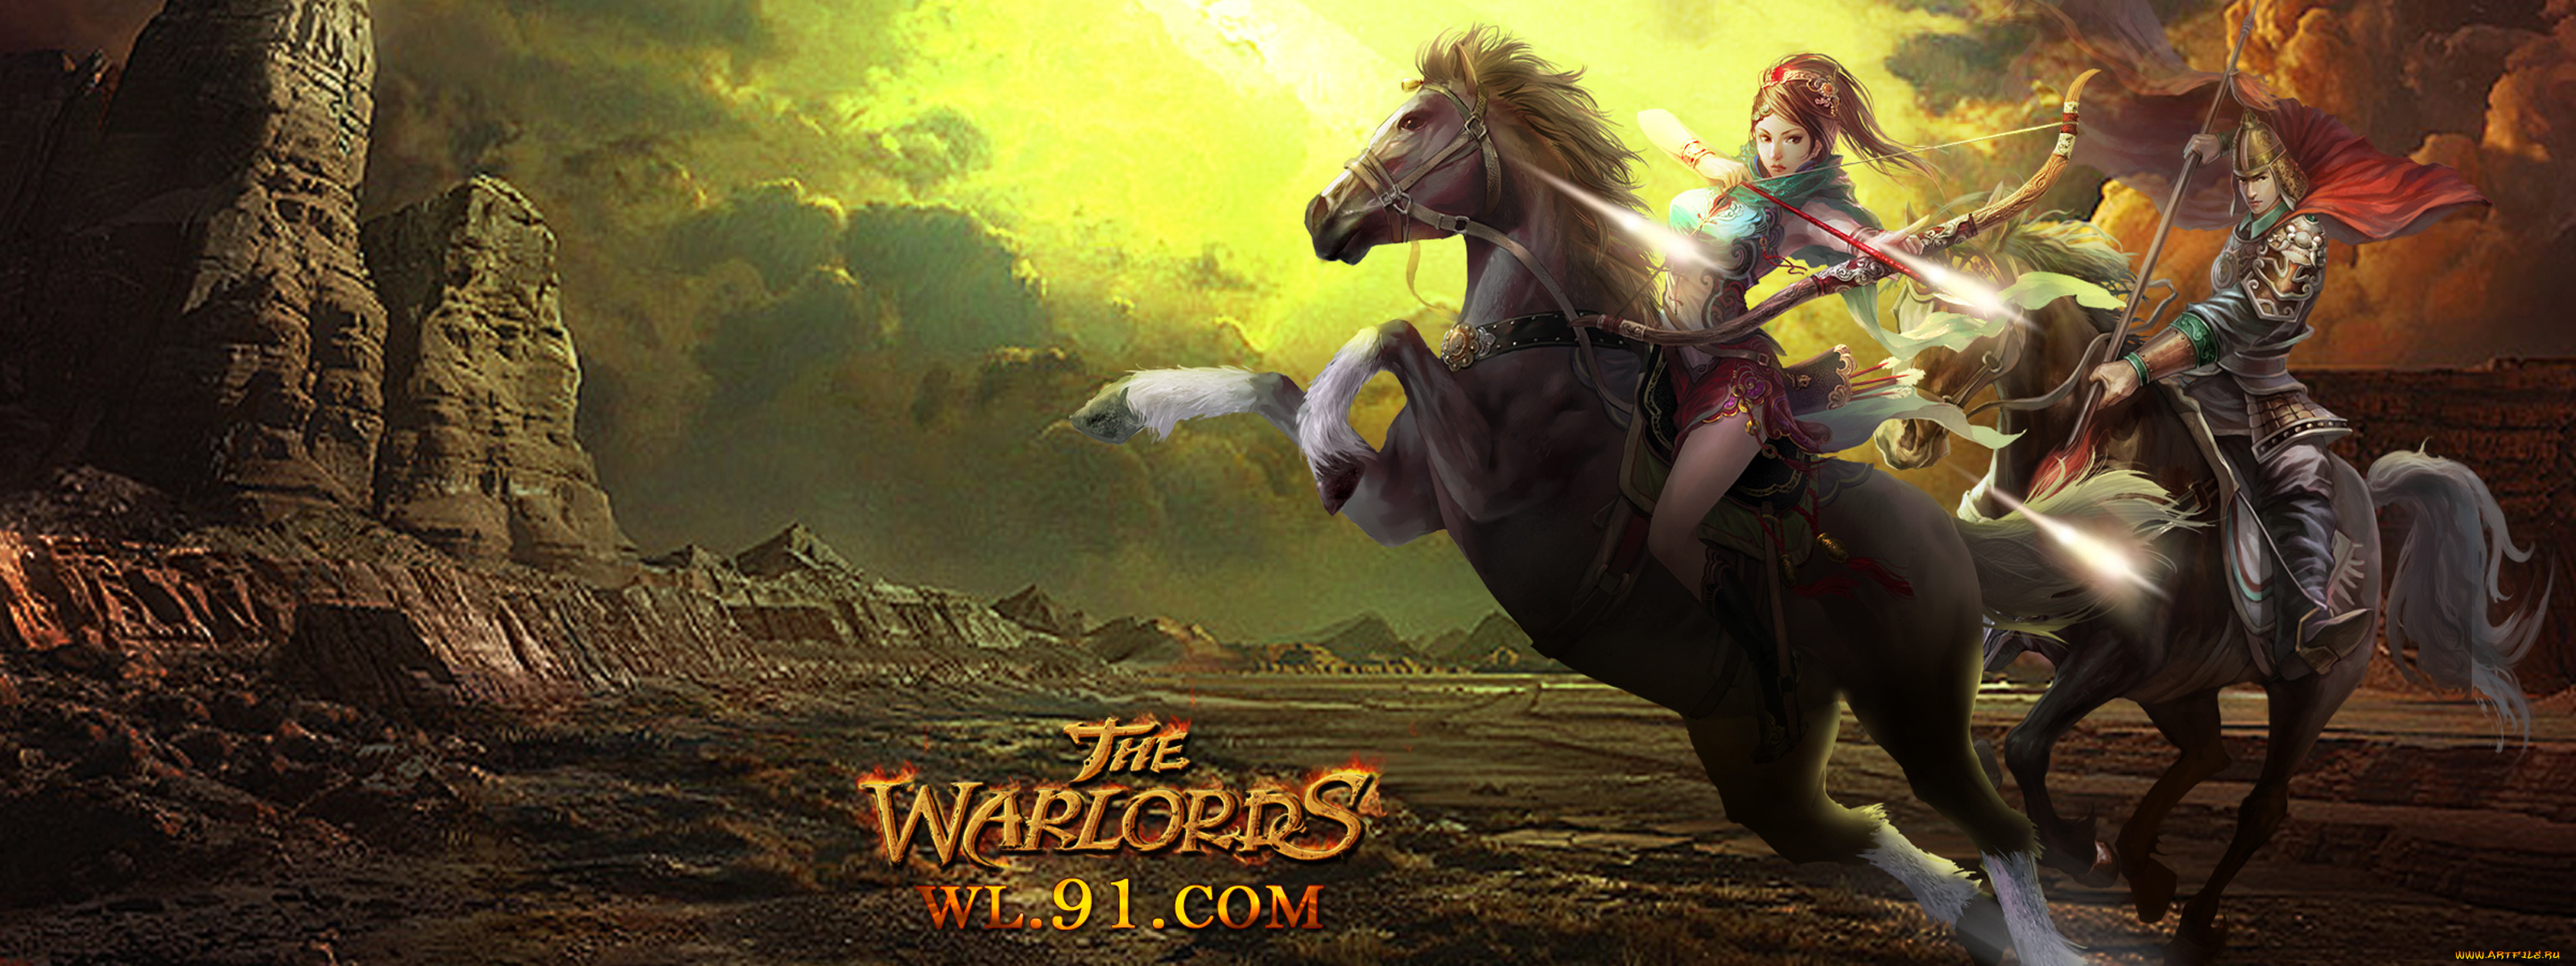 видео, игры, the, warlords, кони, девушка